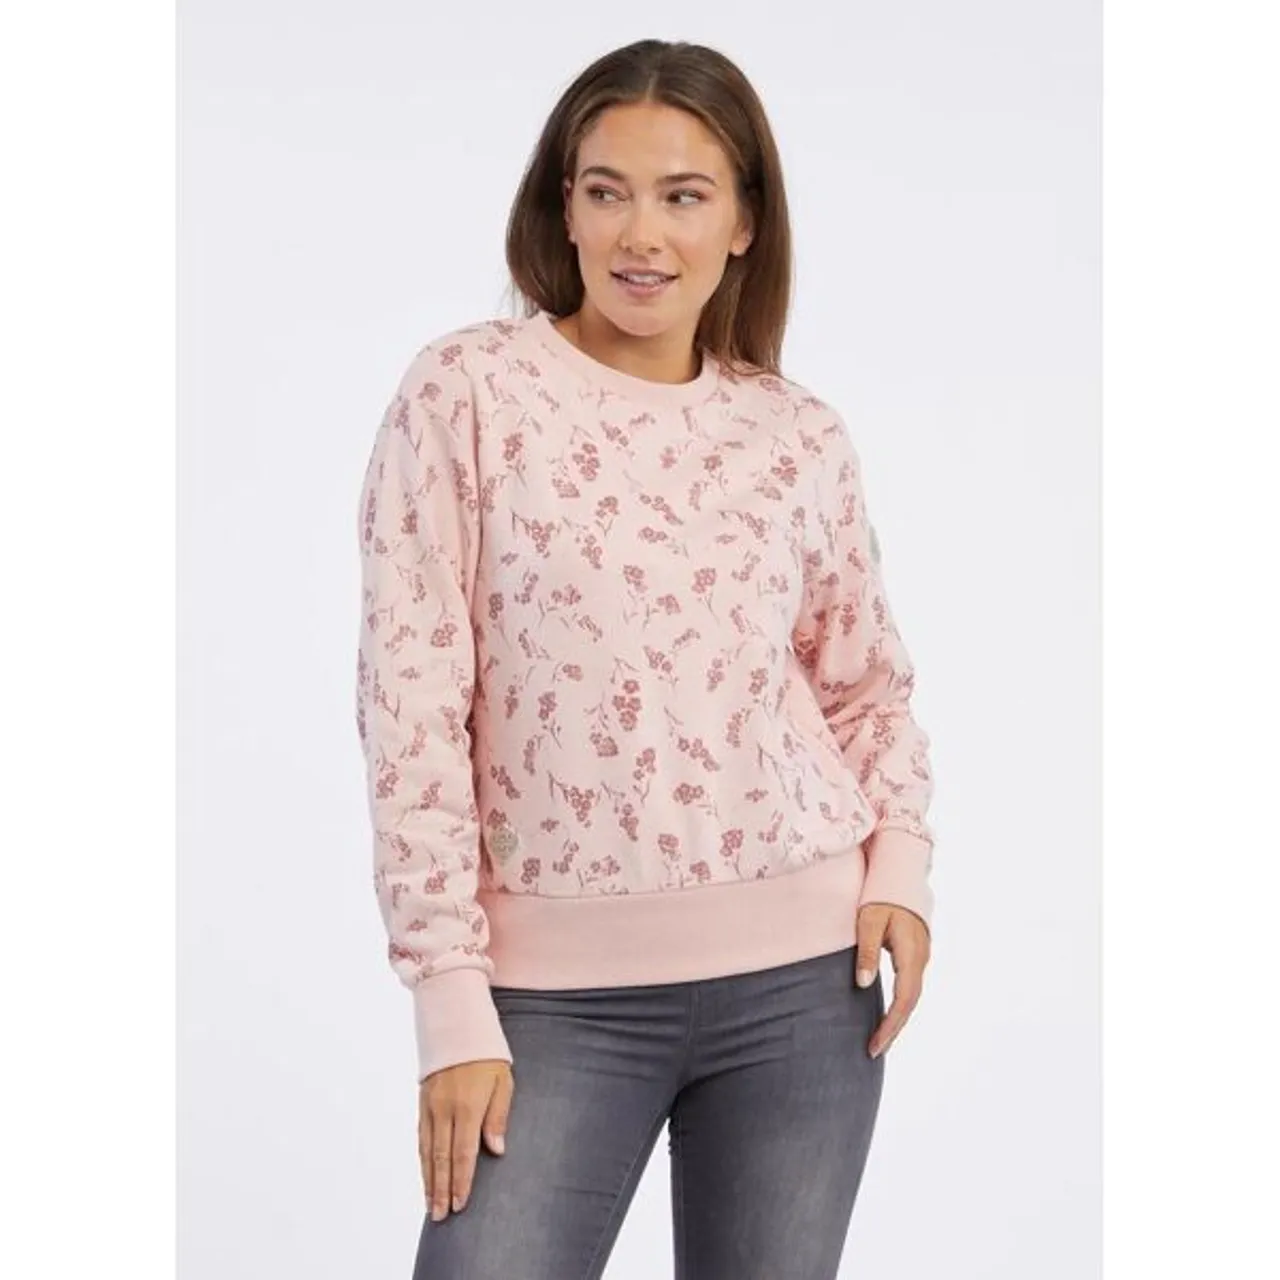 Sweater RAGWEAR "HEIKKE" Gr. XS (34), rosa (light pink) Damen Sweatshirts mit sommerlichem Alloverdruck